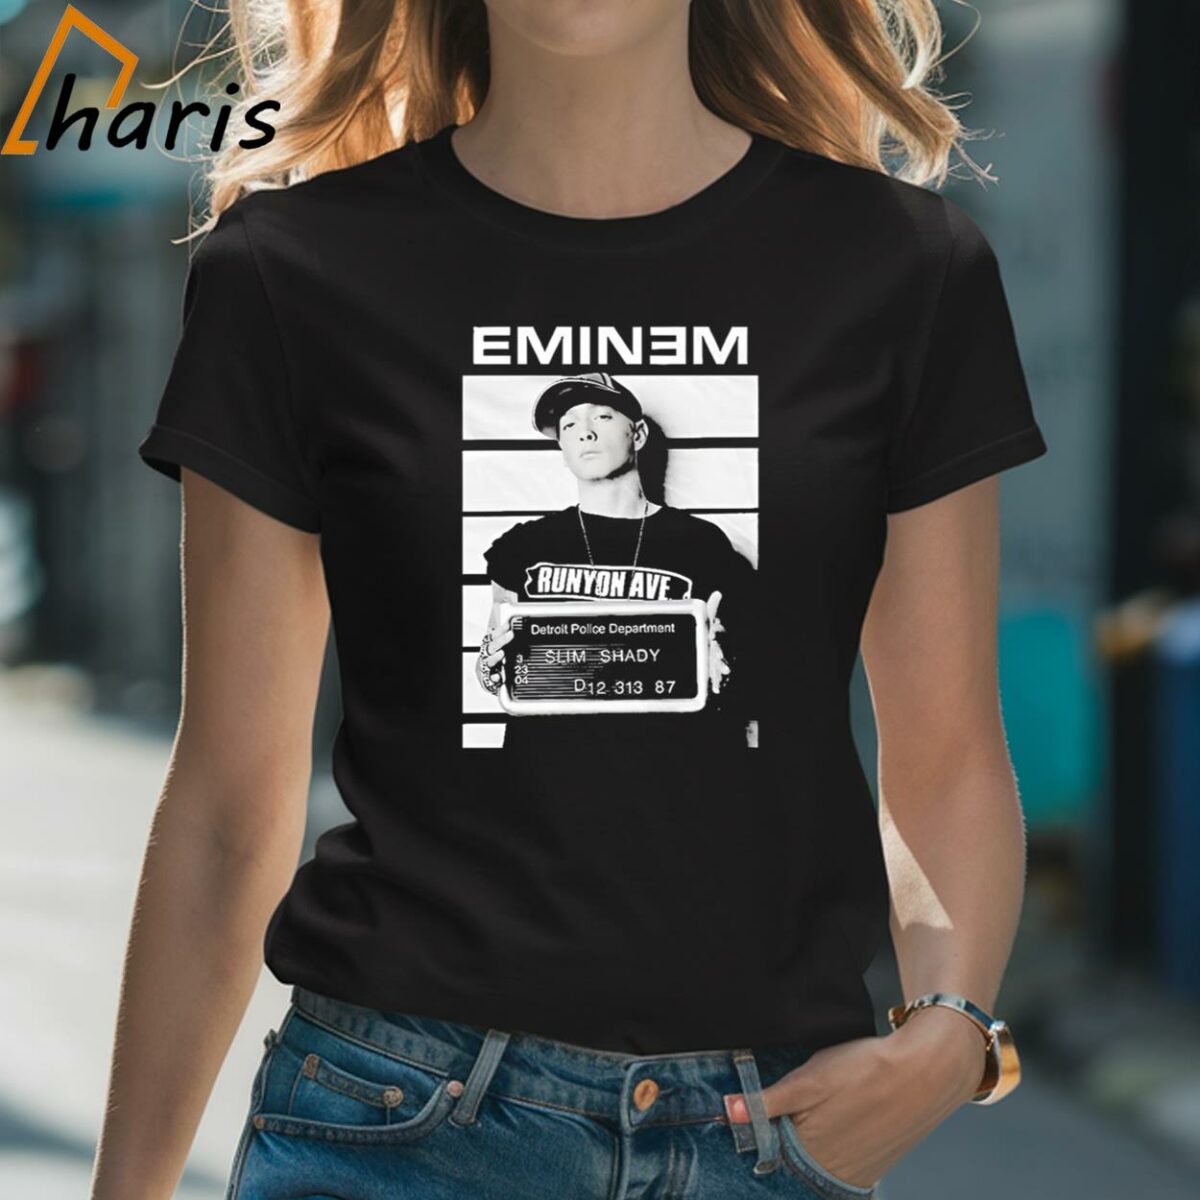 Eminem Detroit Police Department Slim Shady Shirt 2 Shirt